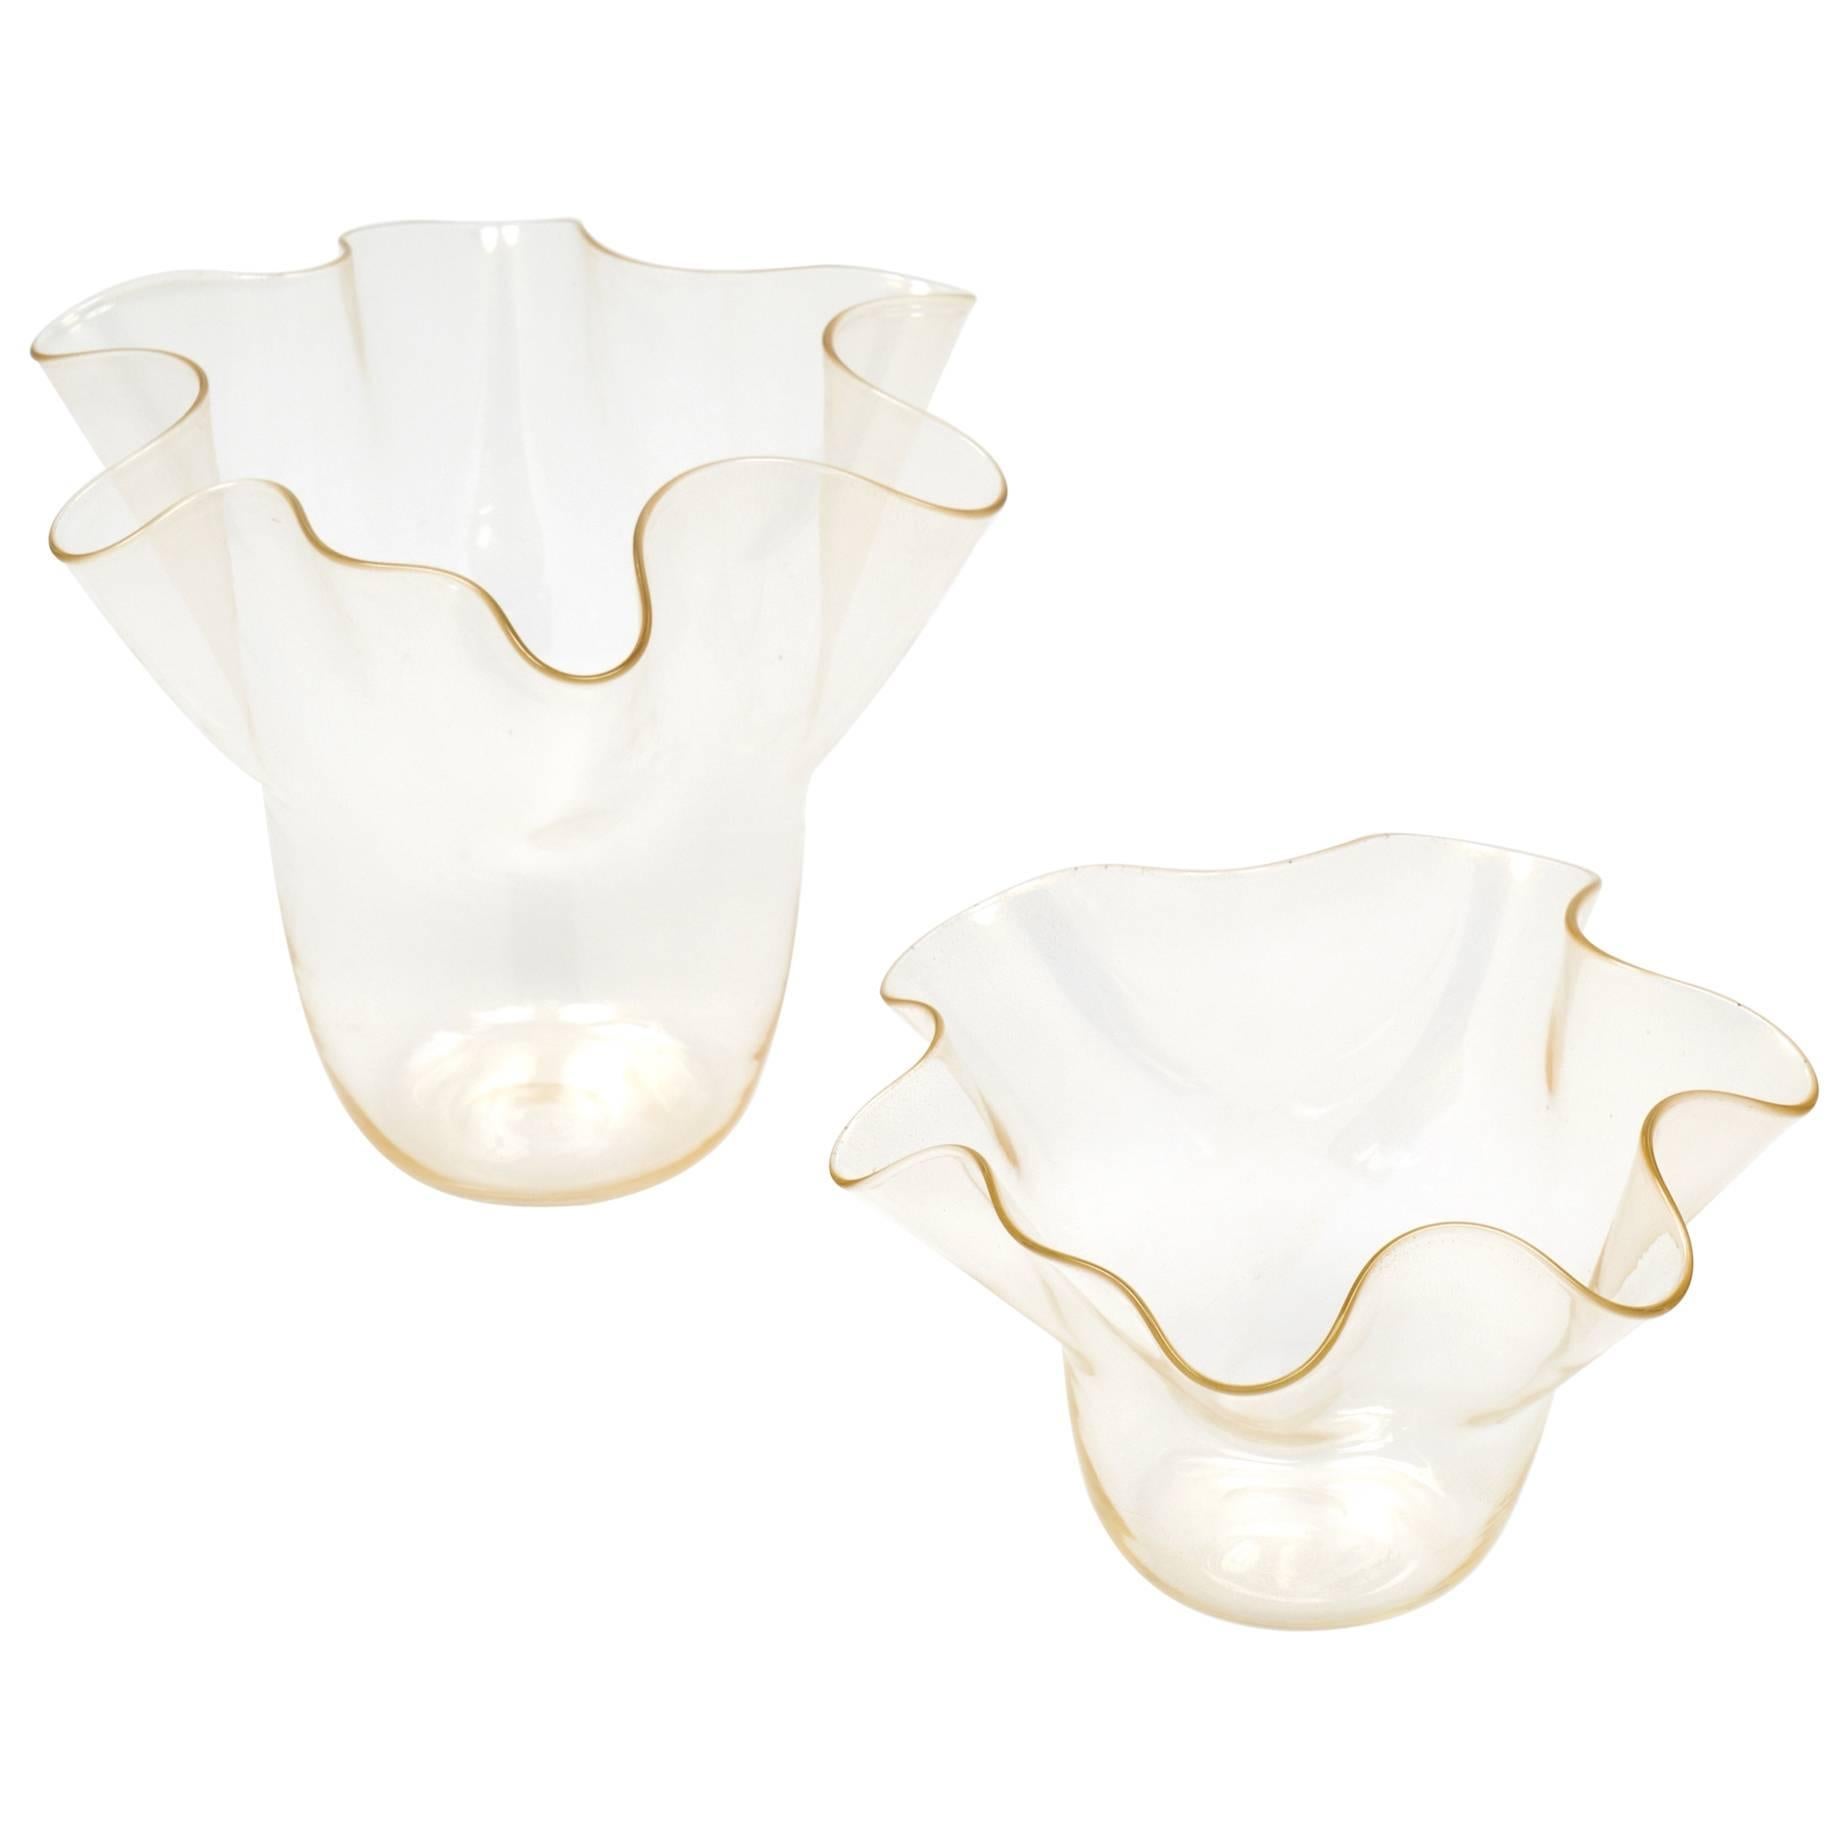 Murano "Avventurina" Glass Set of Wavy Bowls